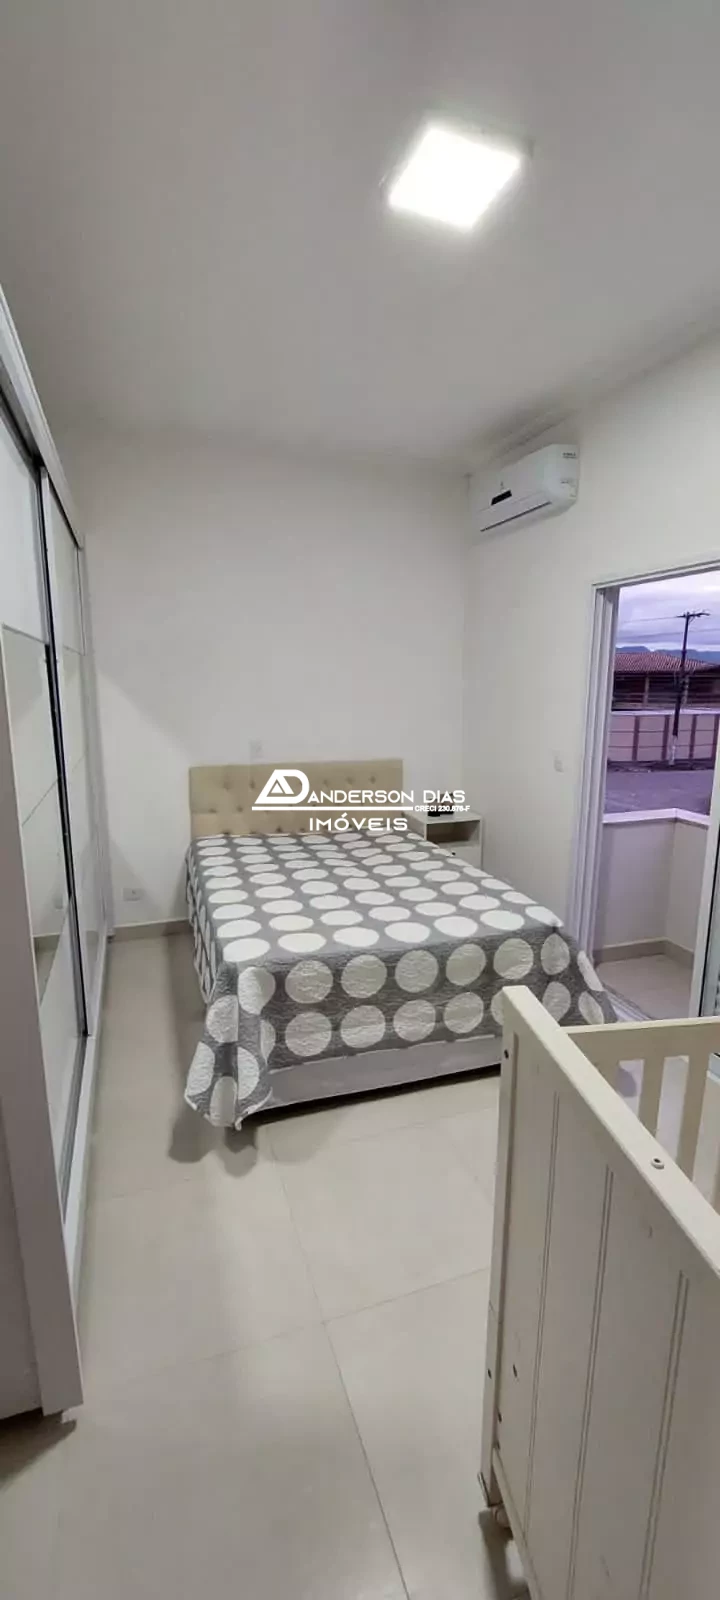 Casa Alto Padrão com 4 dormitórios, 2 Suítes a venda no Bairro Britânia por R$ 1.800.000 mil - Caraguatatuba-SP